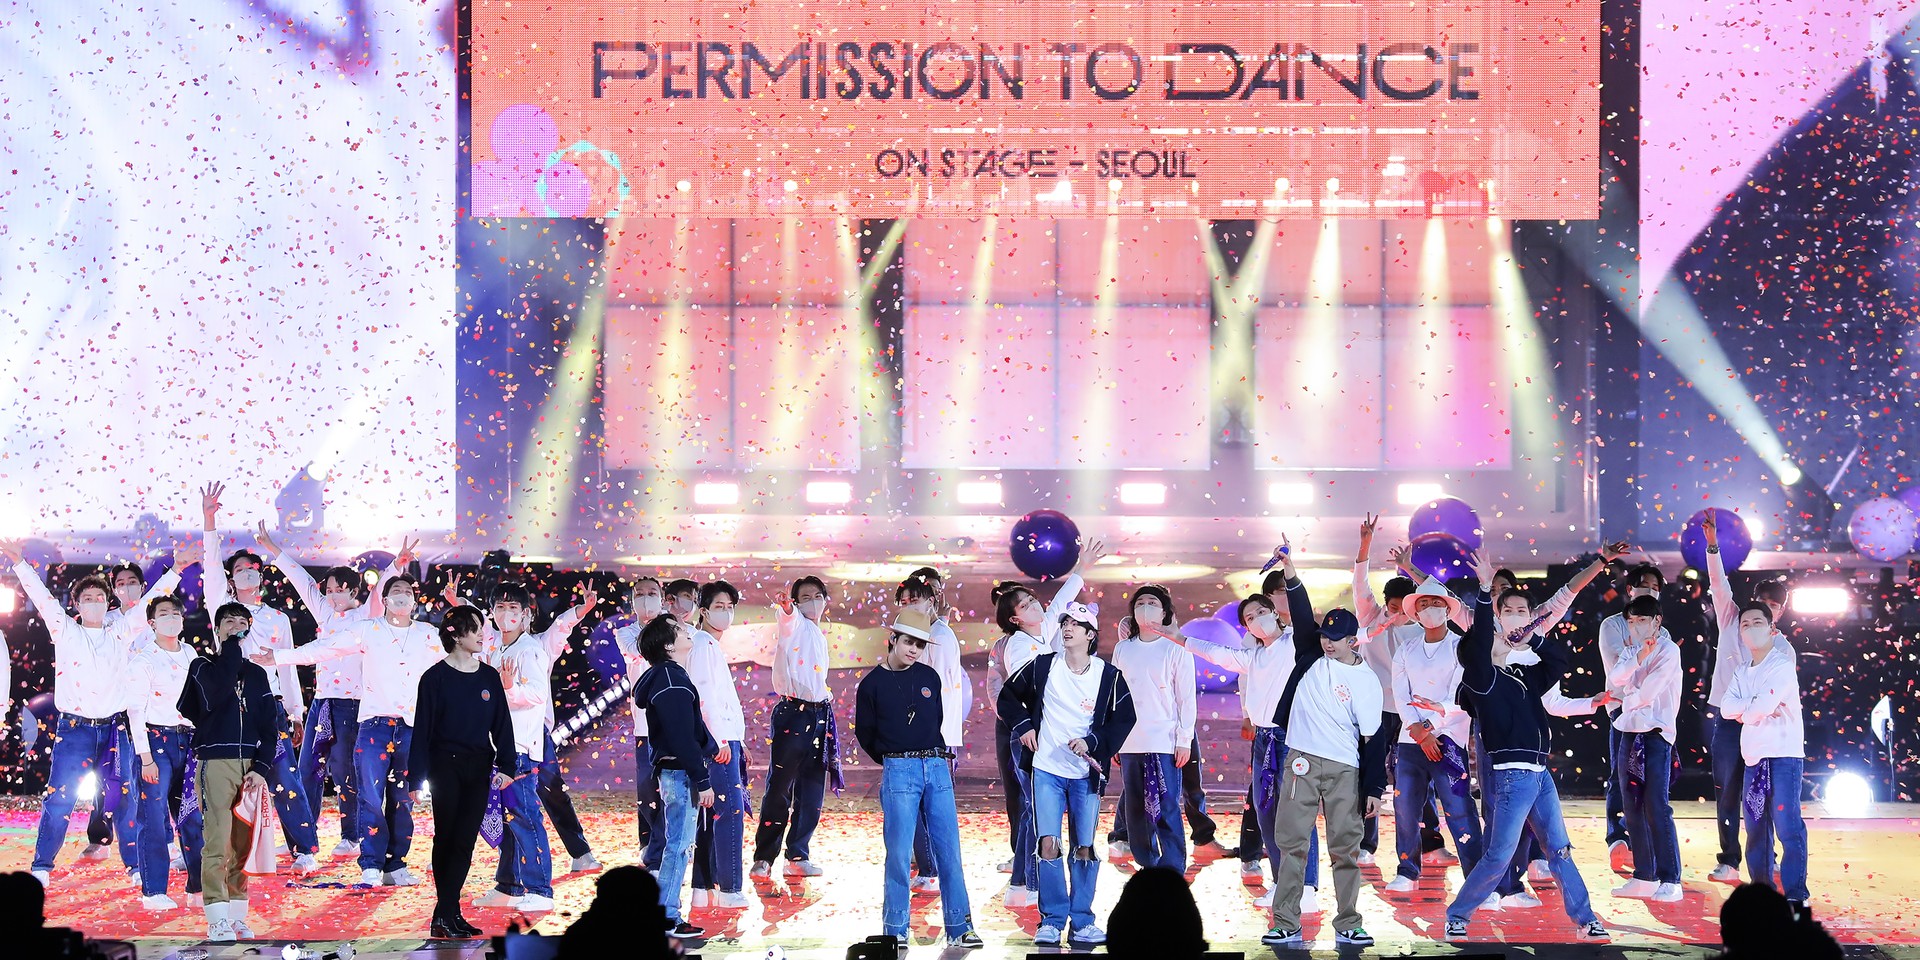 bts-permission-to-dance-obts-permission-to-dance-o